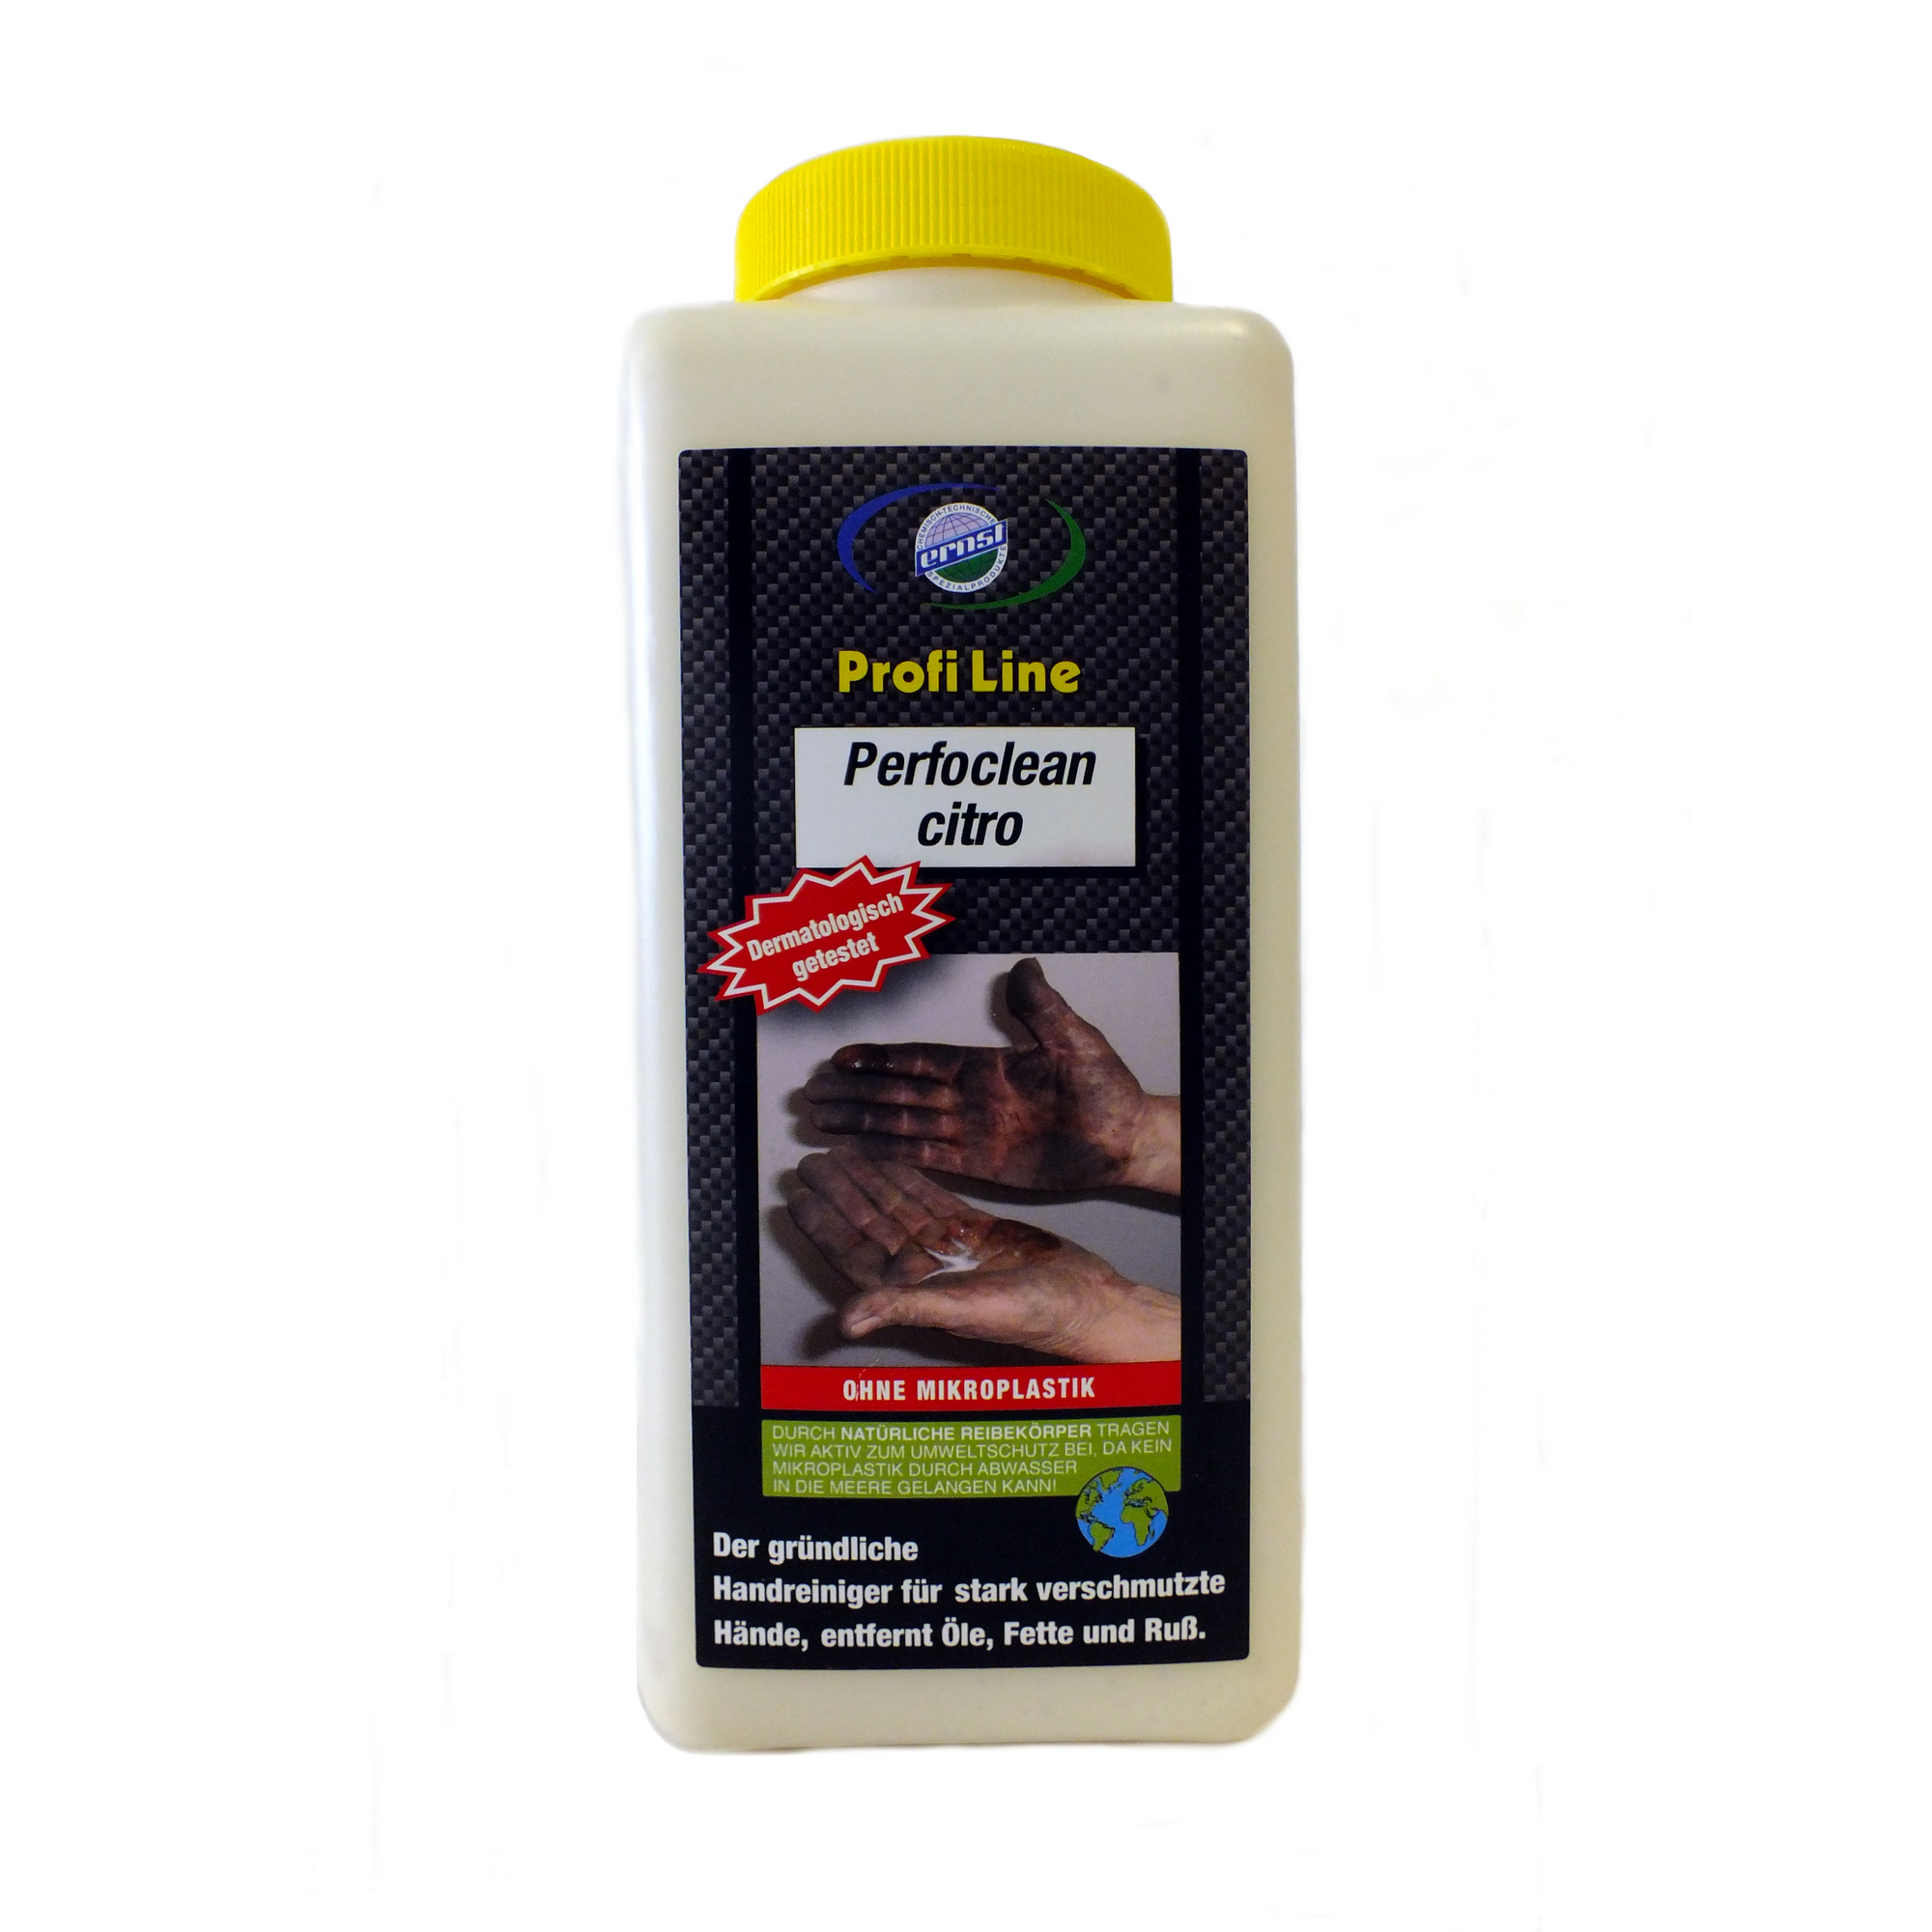 Waschlotion für die Hände 'Perfoclean citro' 1 l + product picture